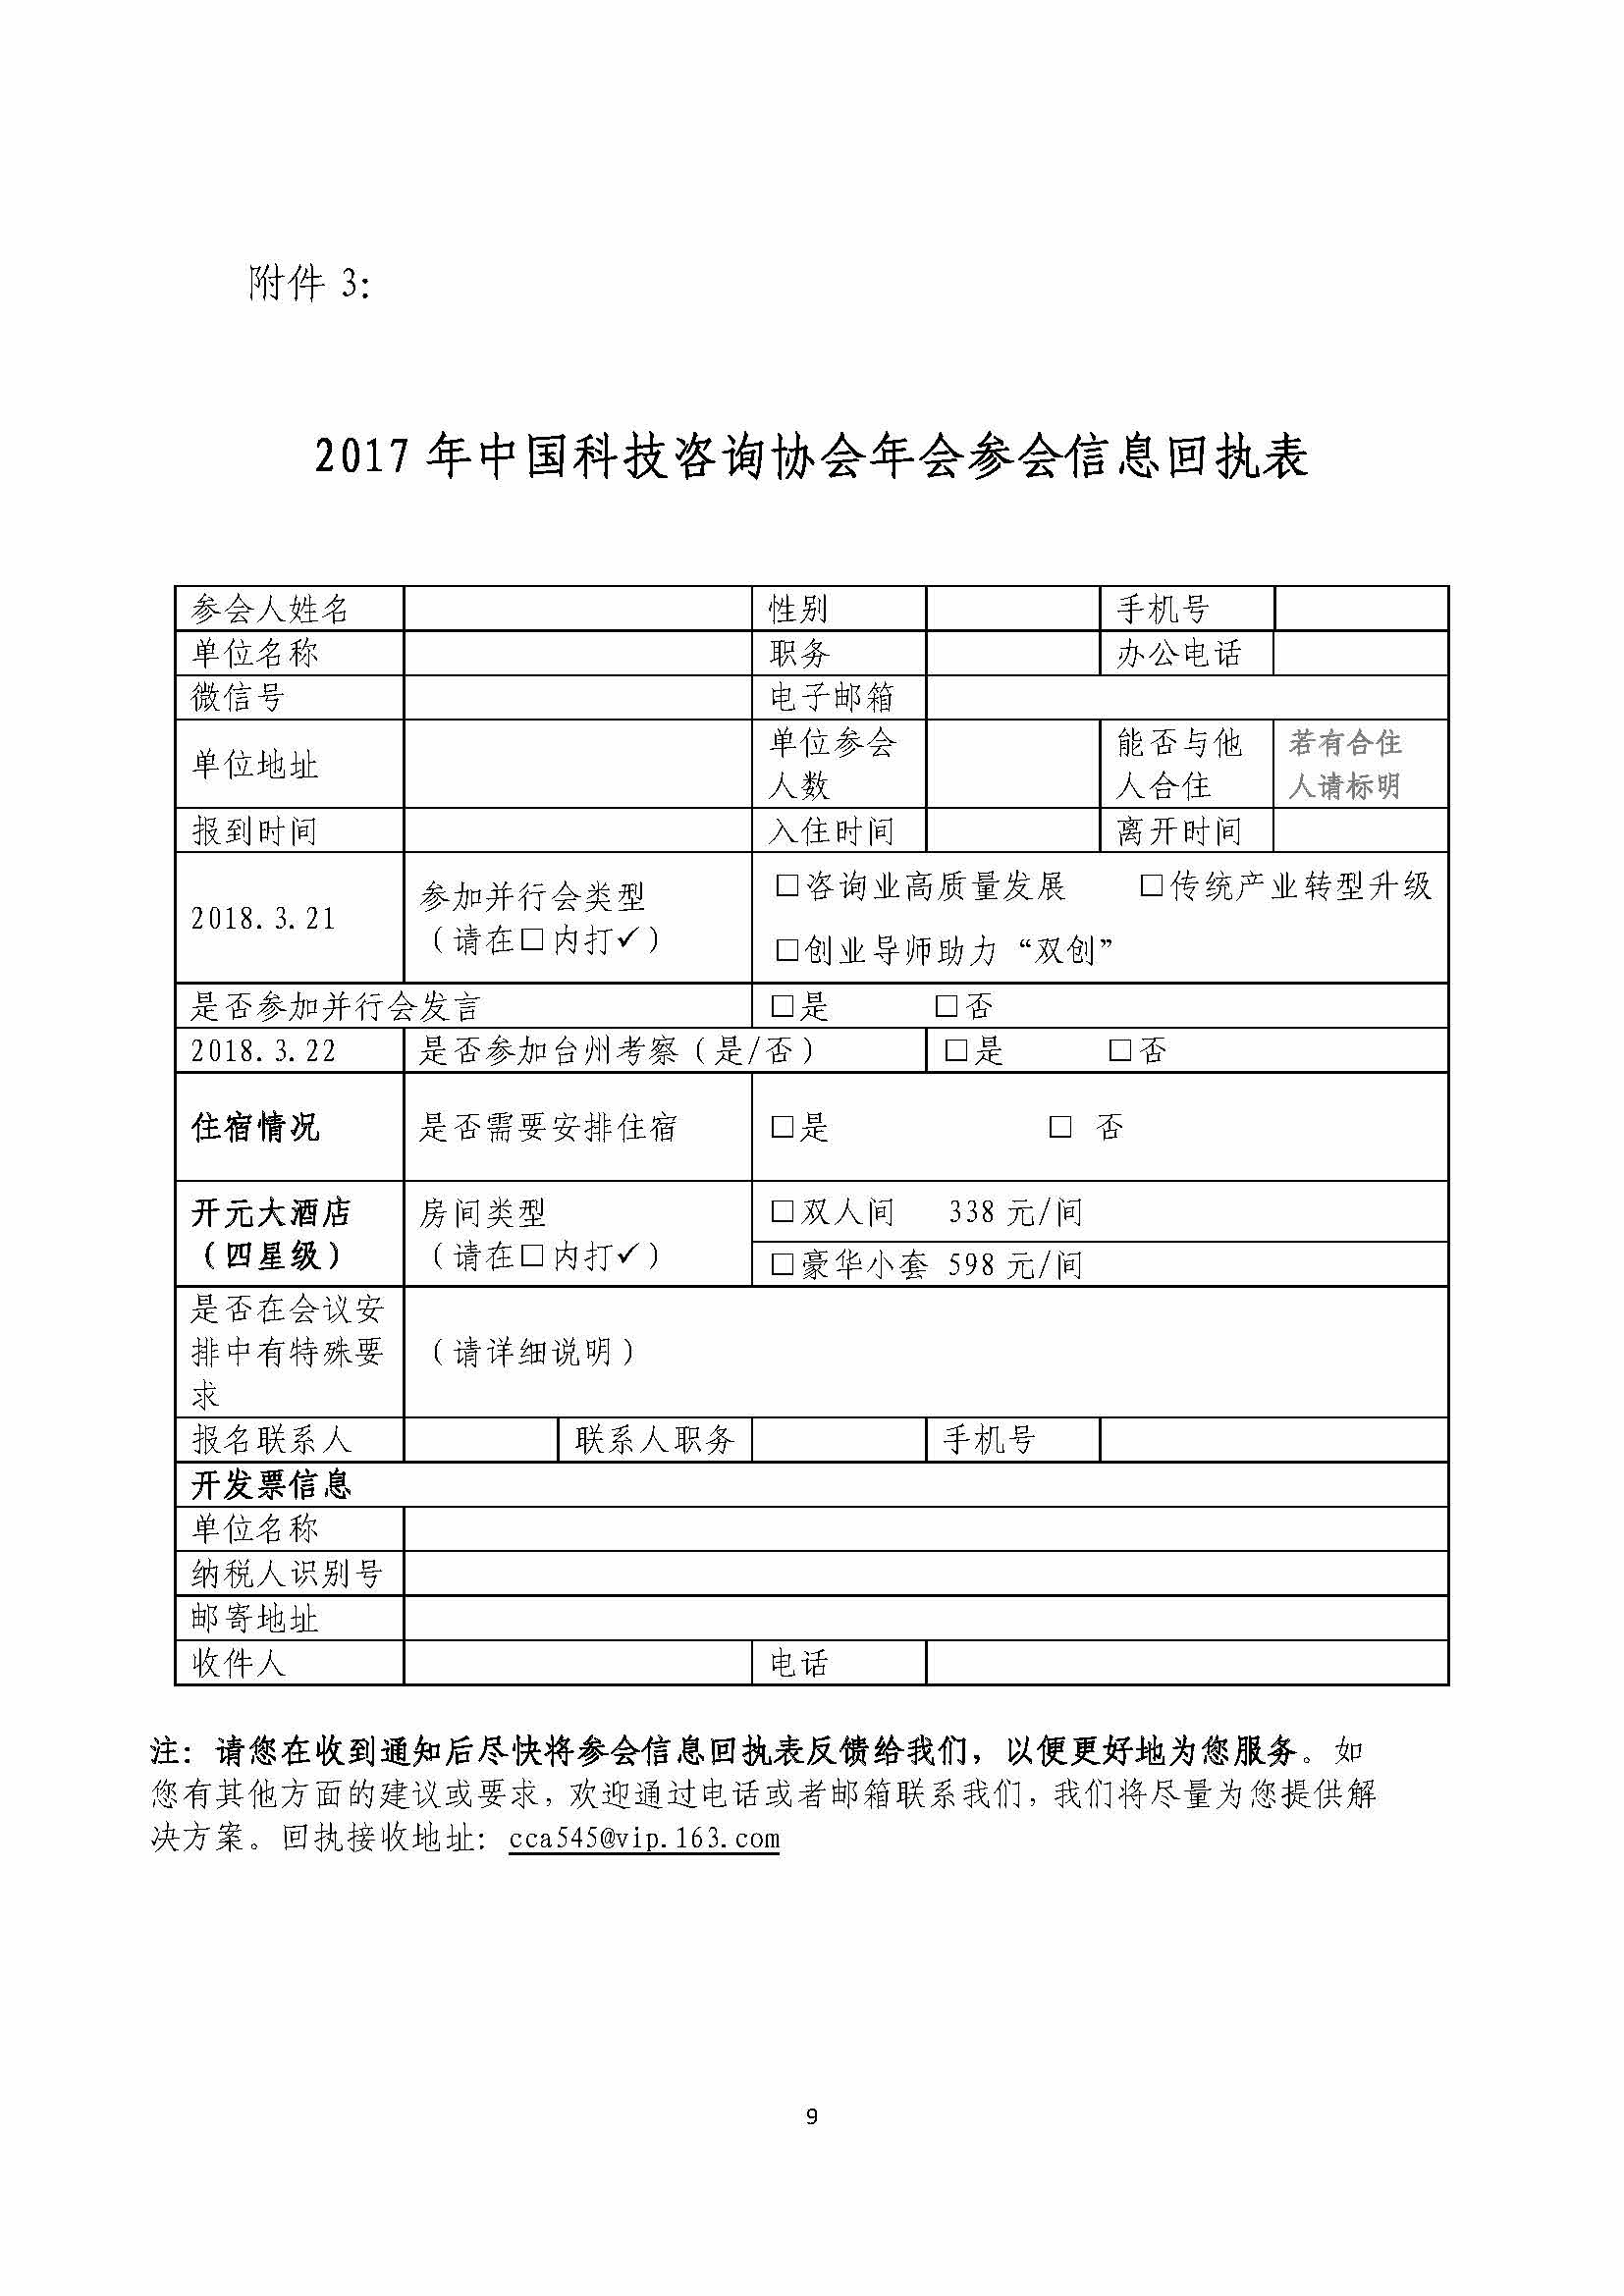 关于召开中国科技咨询协会2017年年会的通知_页面_09.jpg